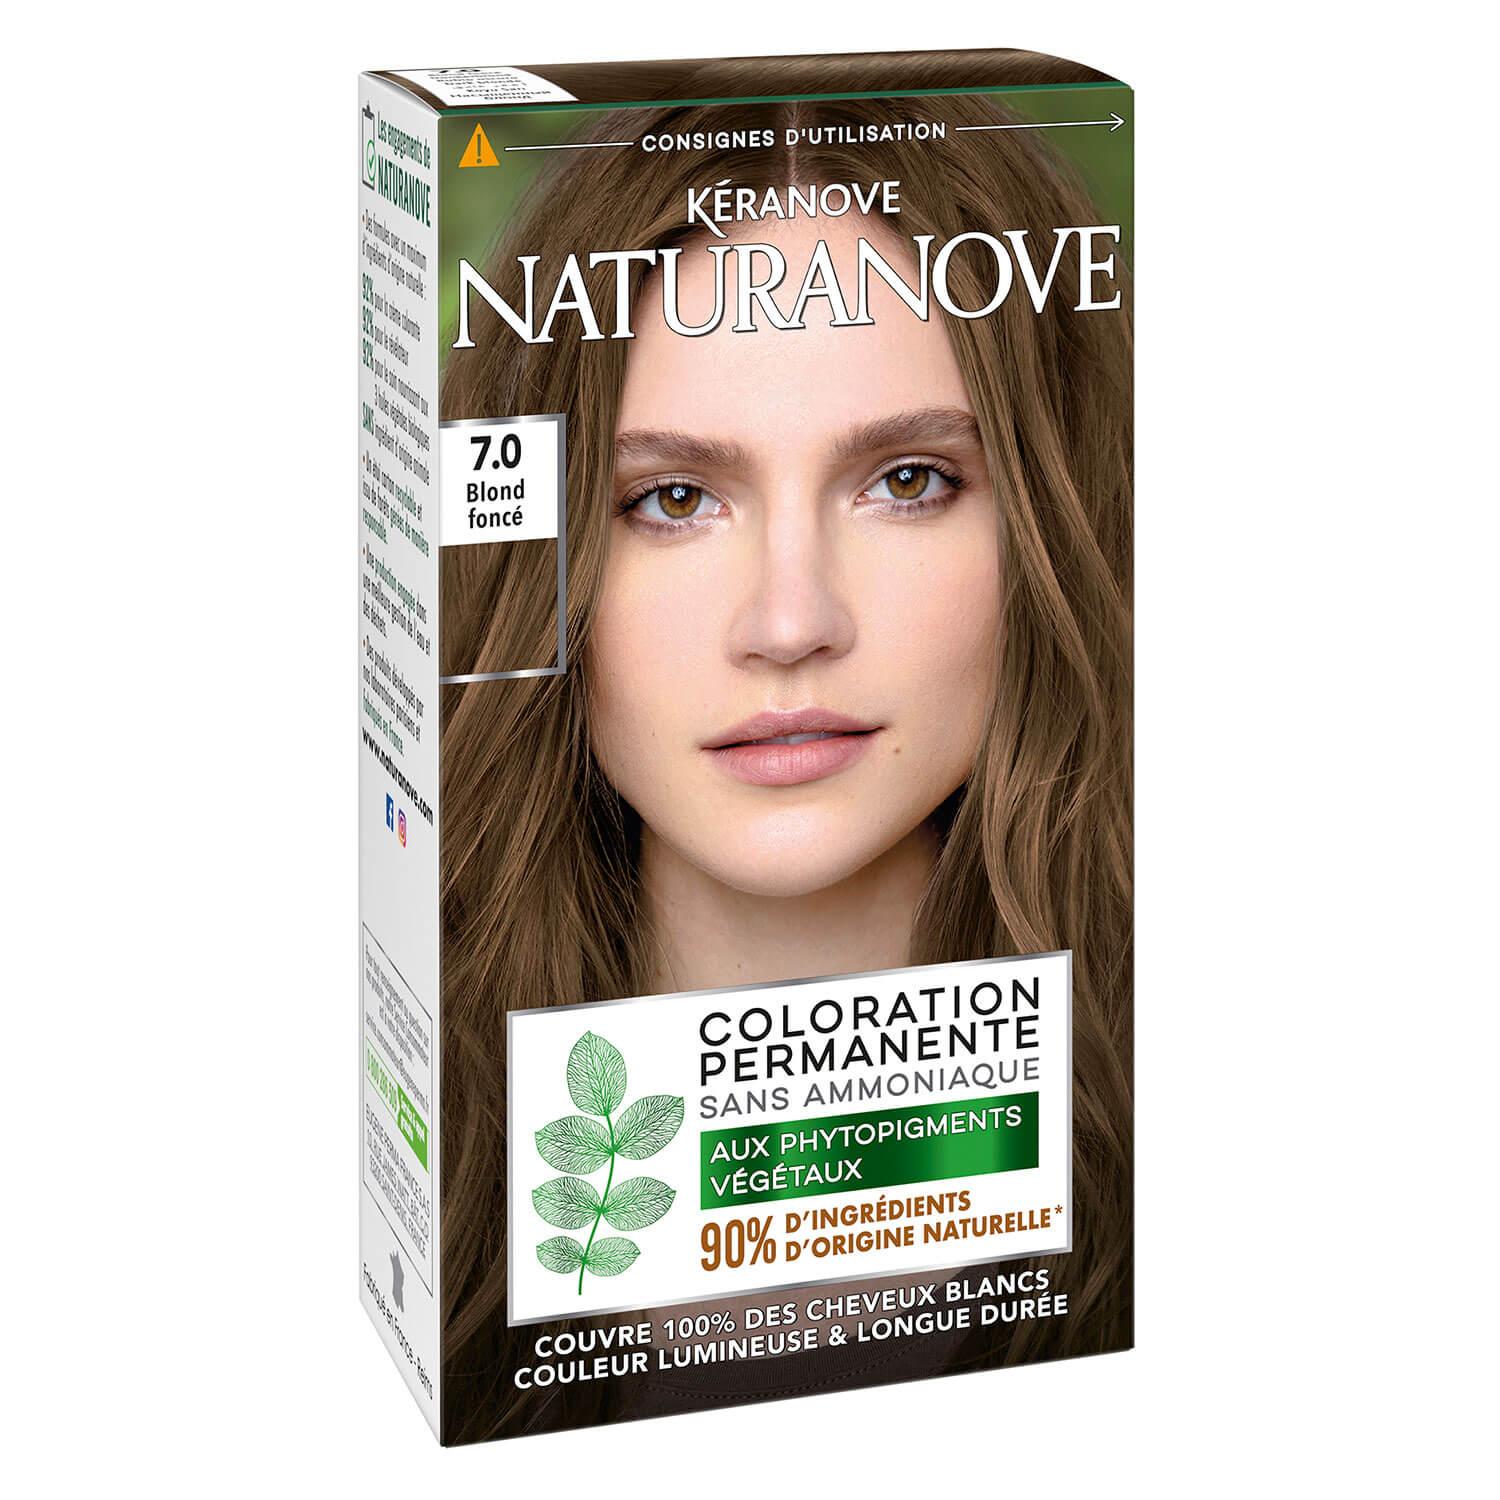 Naturanove - Permanent Hair Color Dark Blonde 7.0